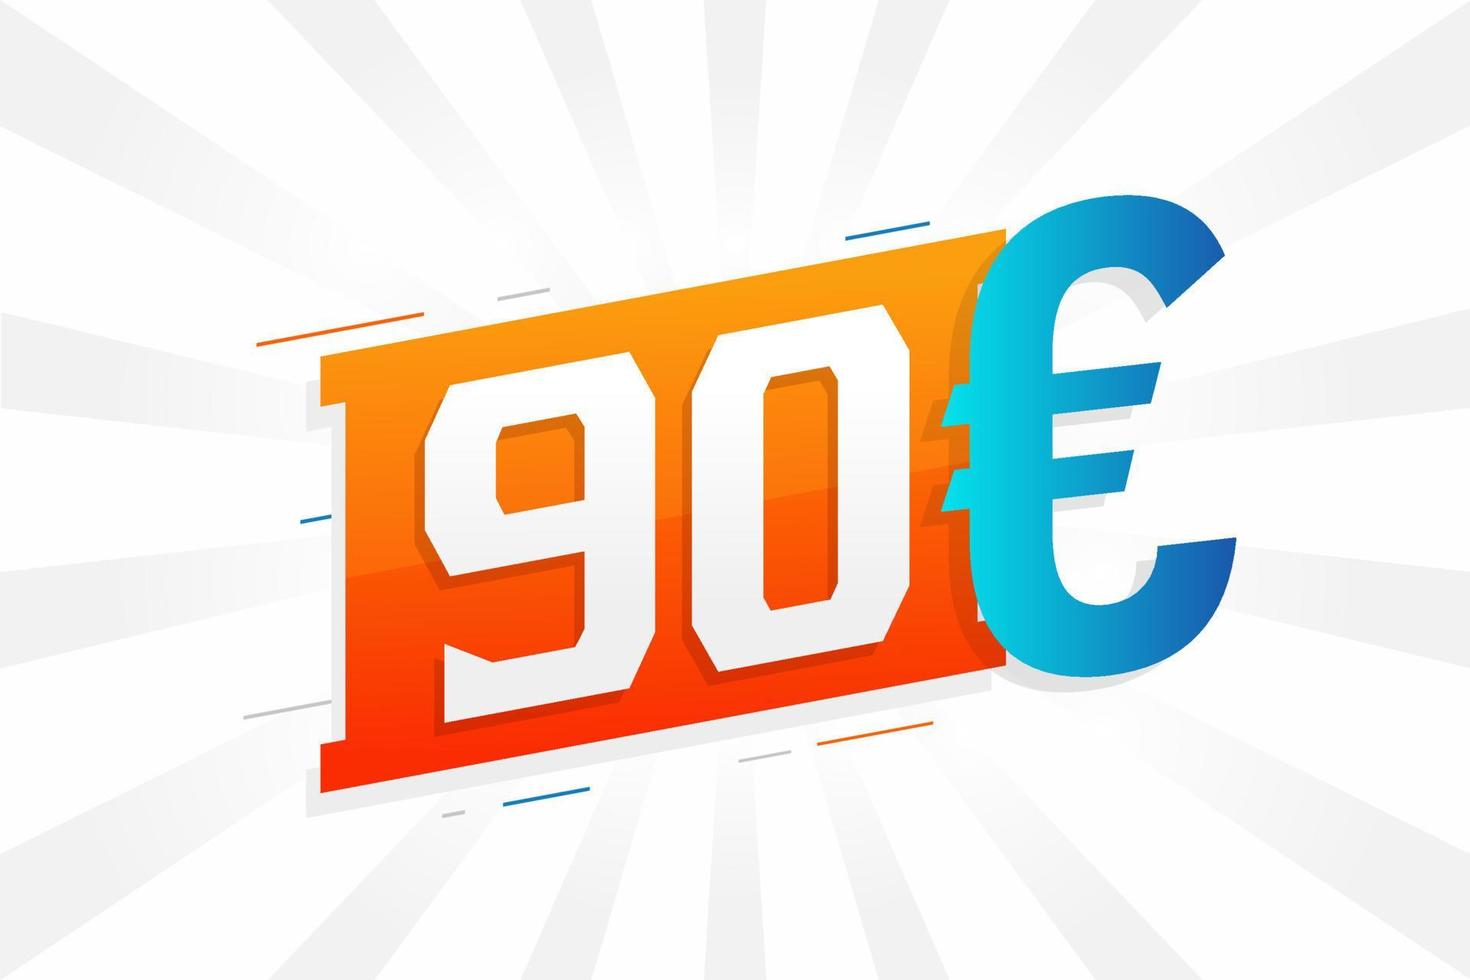 90-Euro-Währungsvektor-Textsymbol. 90 euro geldstockvektor der europäischen union vektor